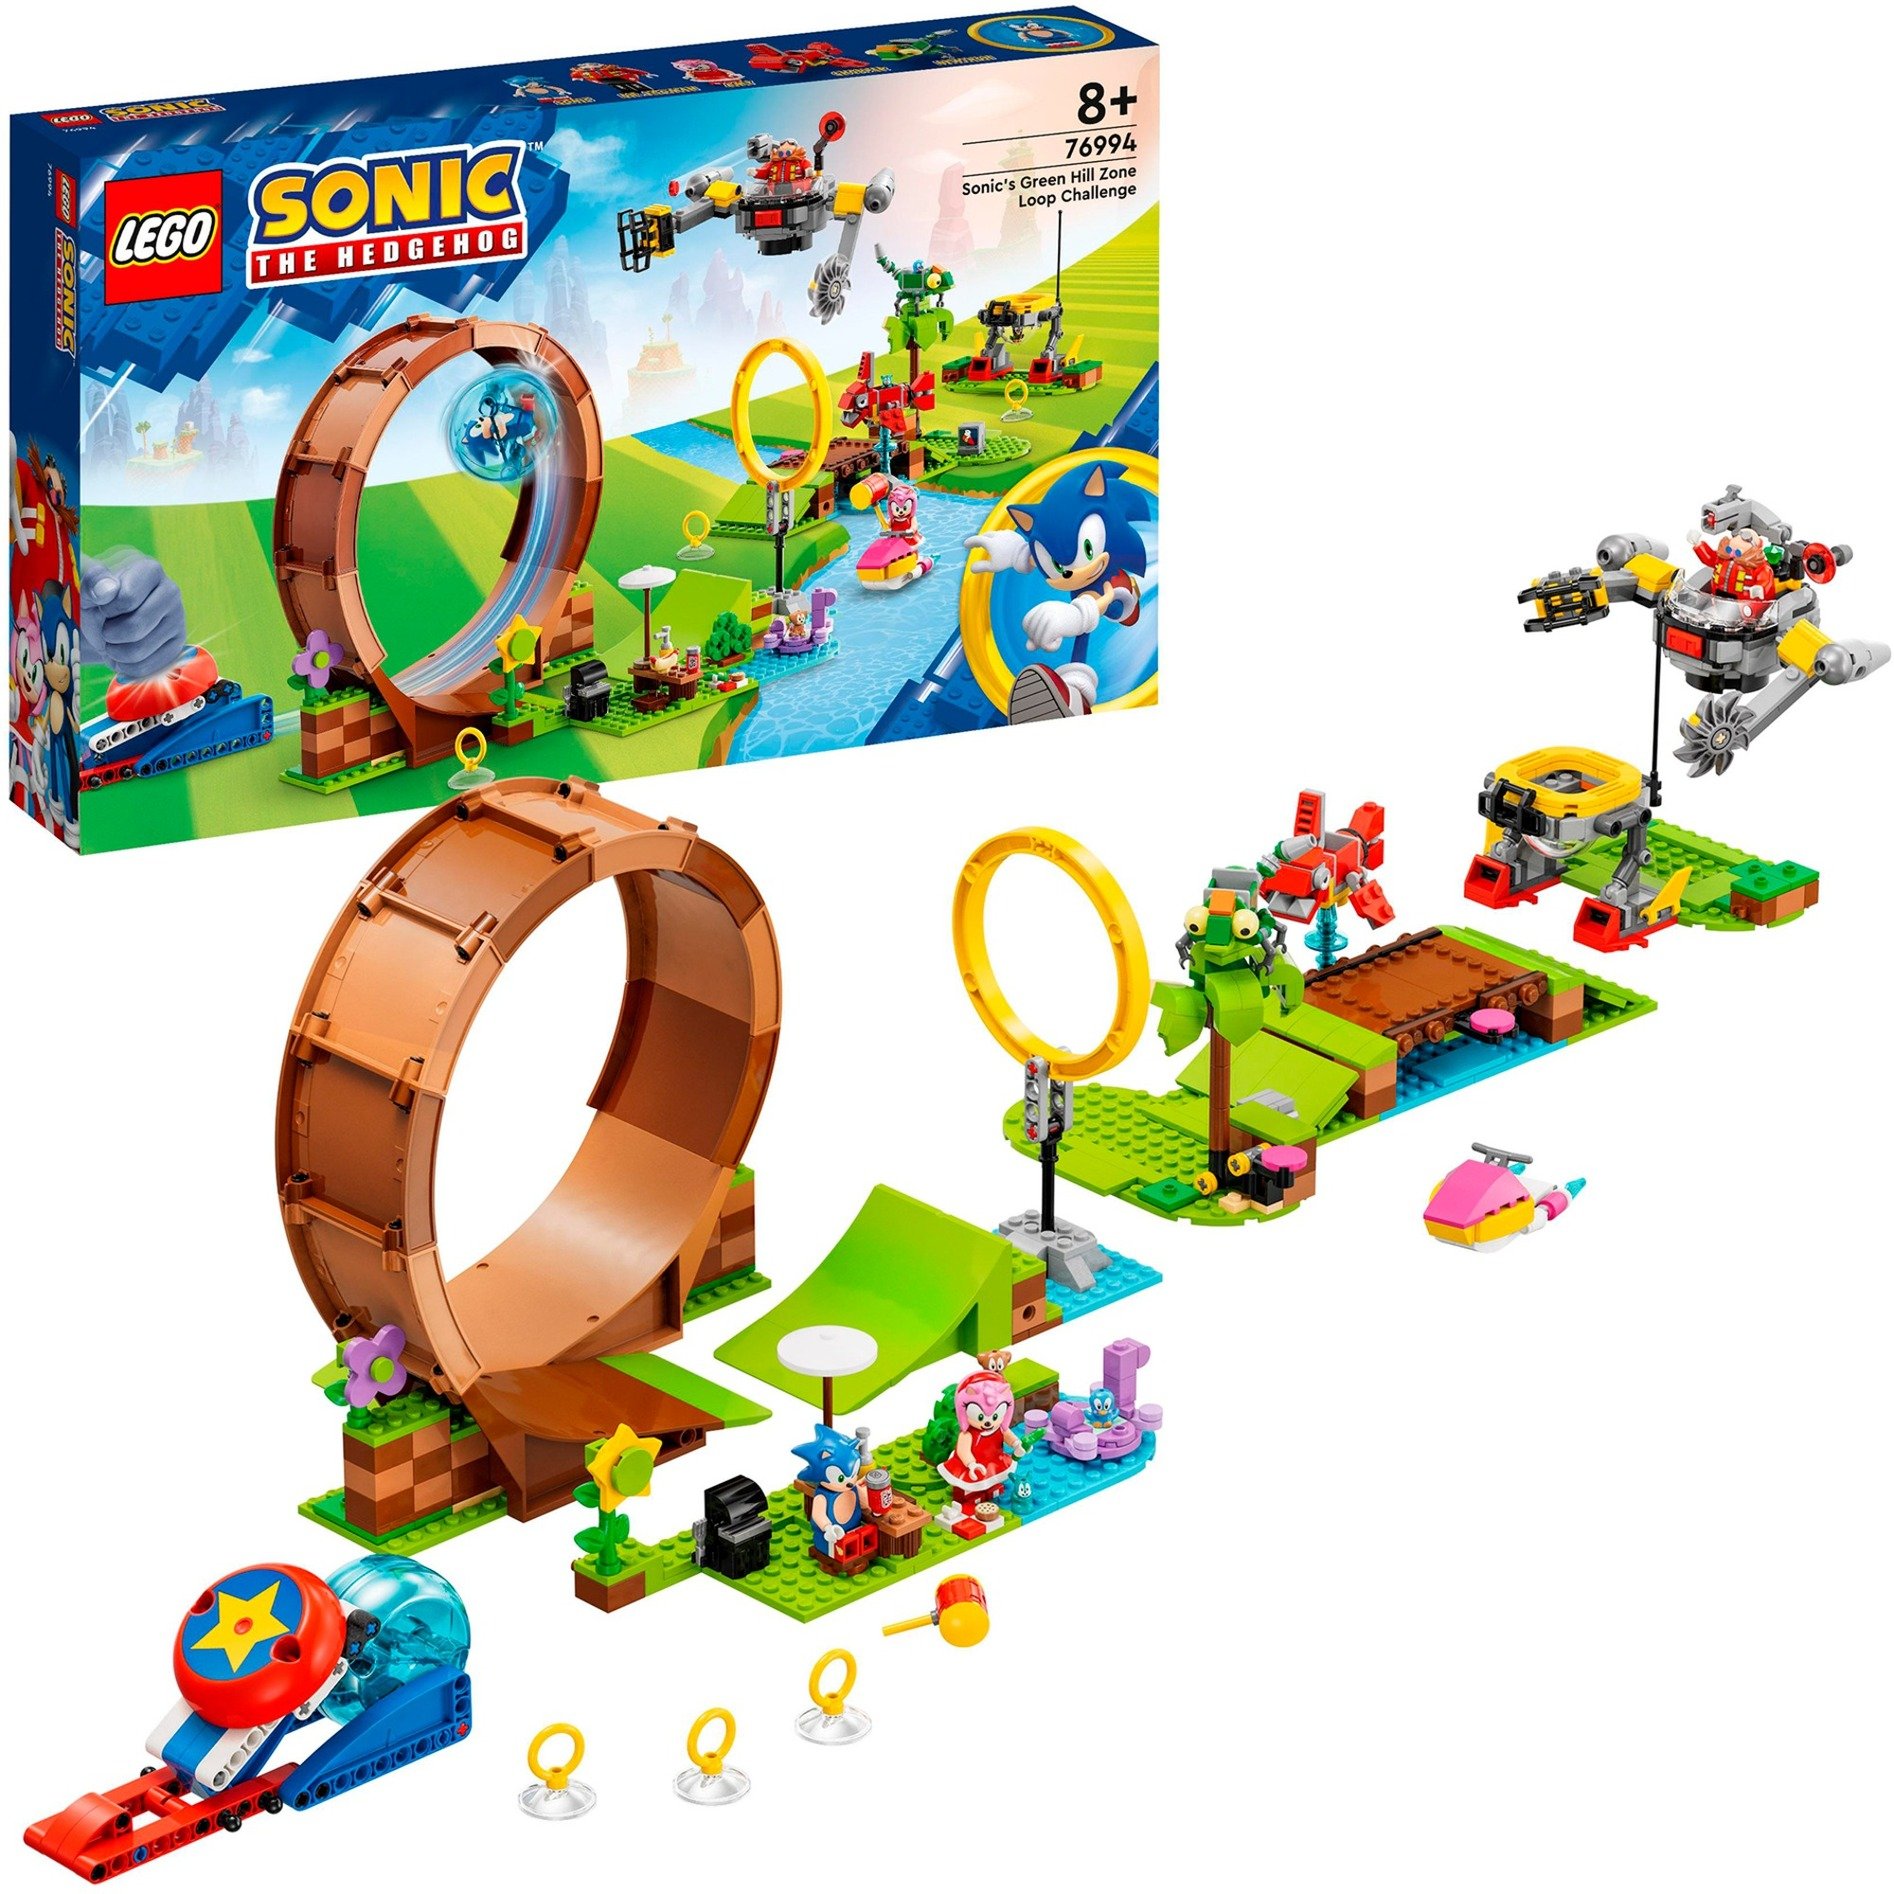 76994 Sonic the Hedgehog Sonics Looping-Challenge in der Green Hill Zone, Konstruktionsspielzeug von Lego